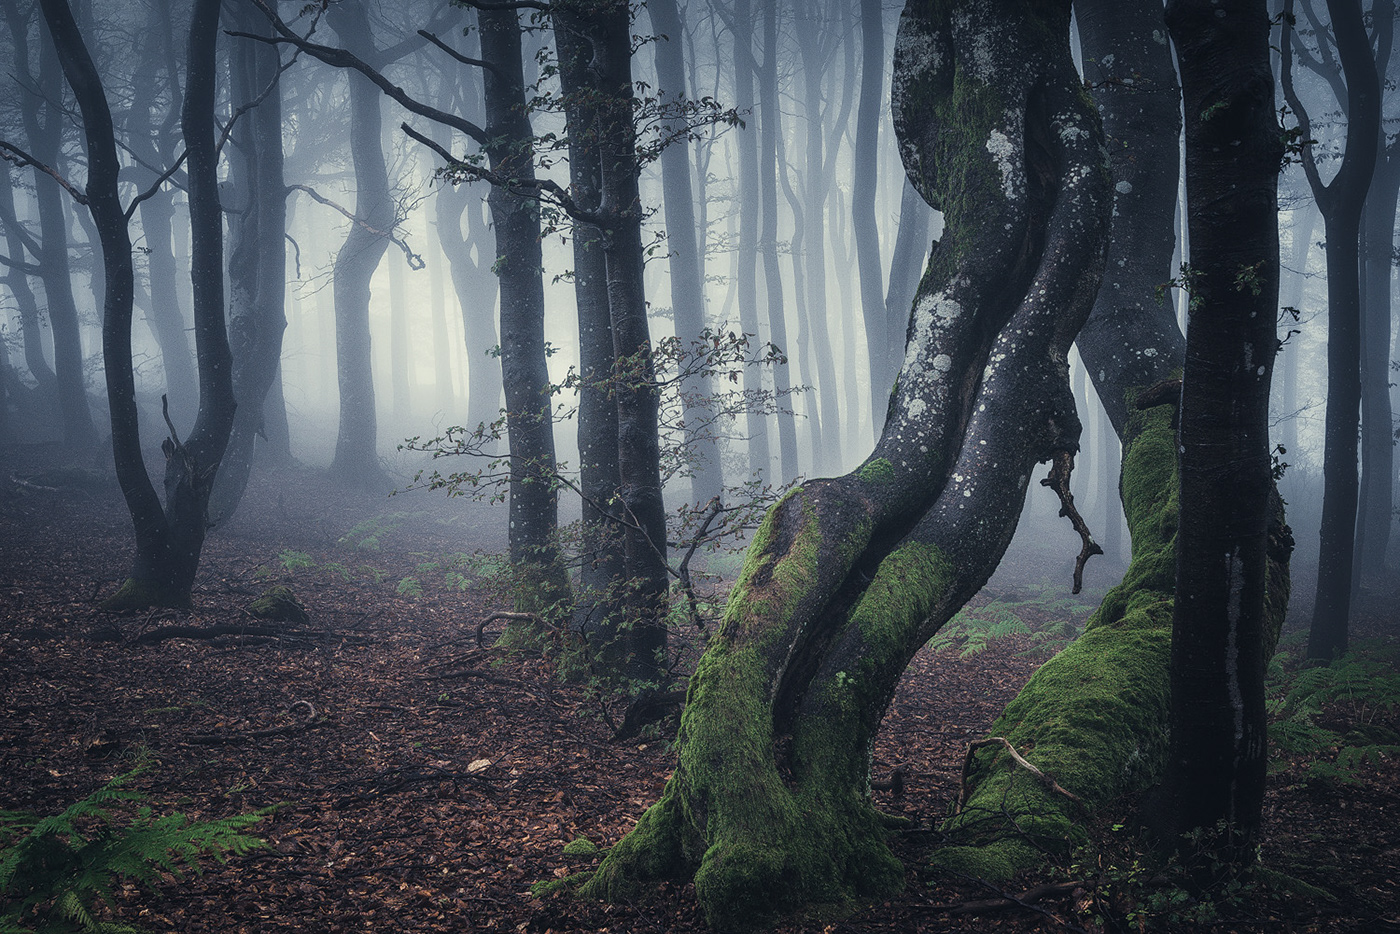 forest wood trees fog mist mood Rhoen germany Landscape